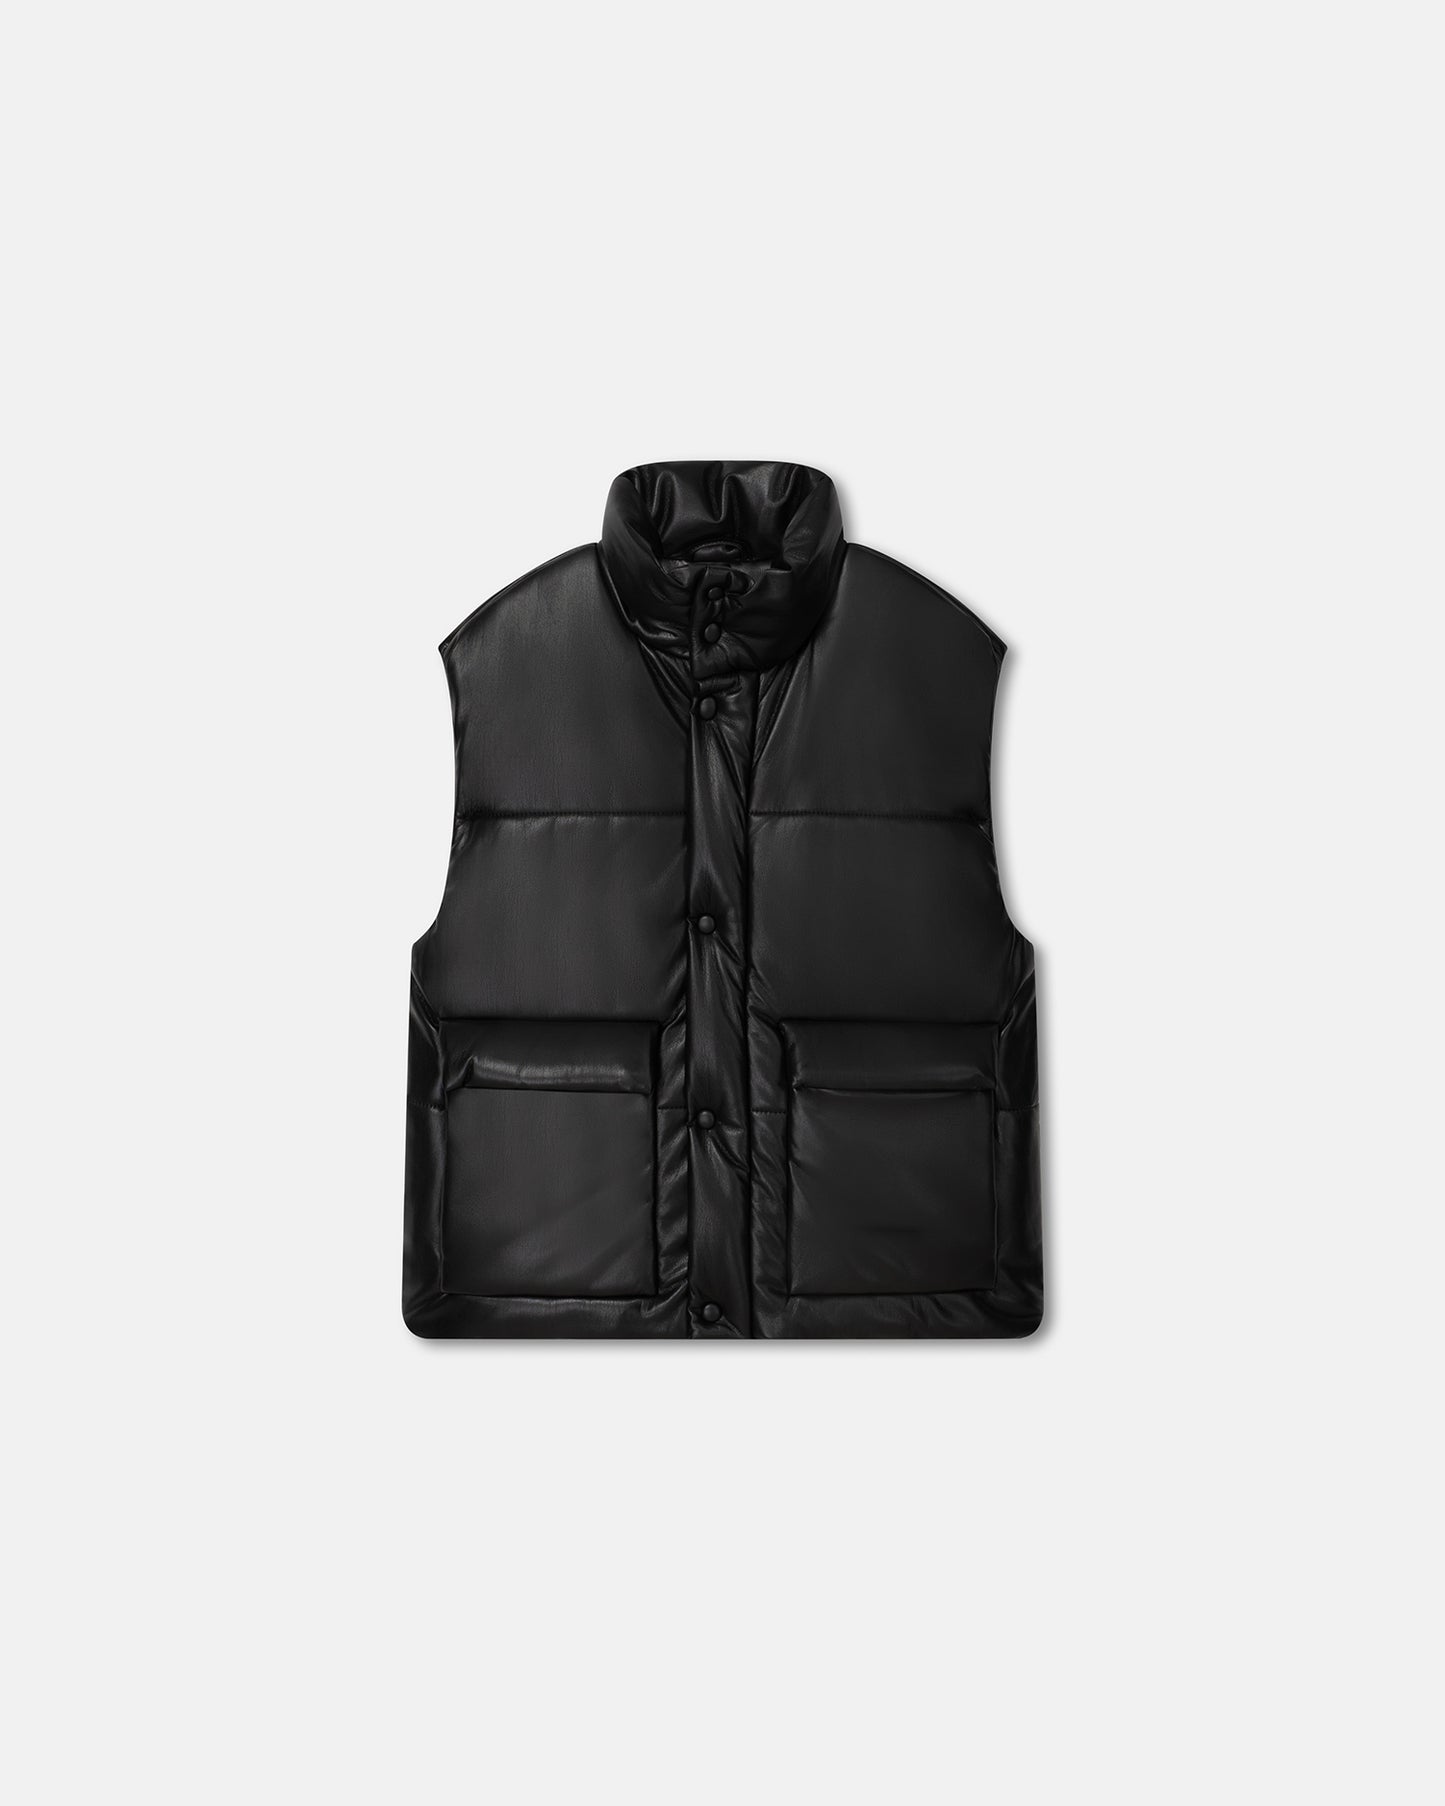 Jovan - Okobor™ Alt-Leather Gilet - Black